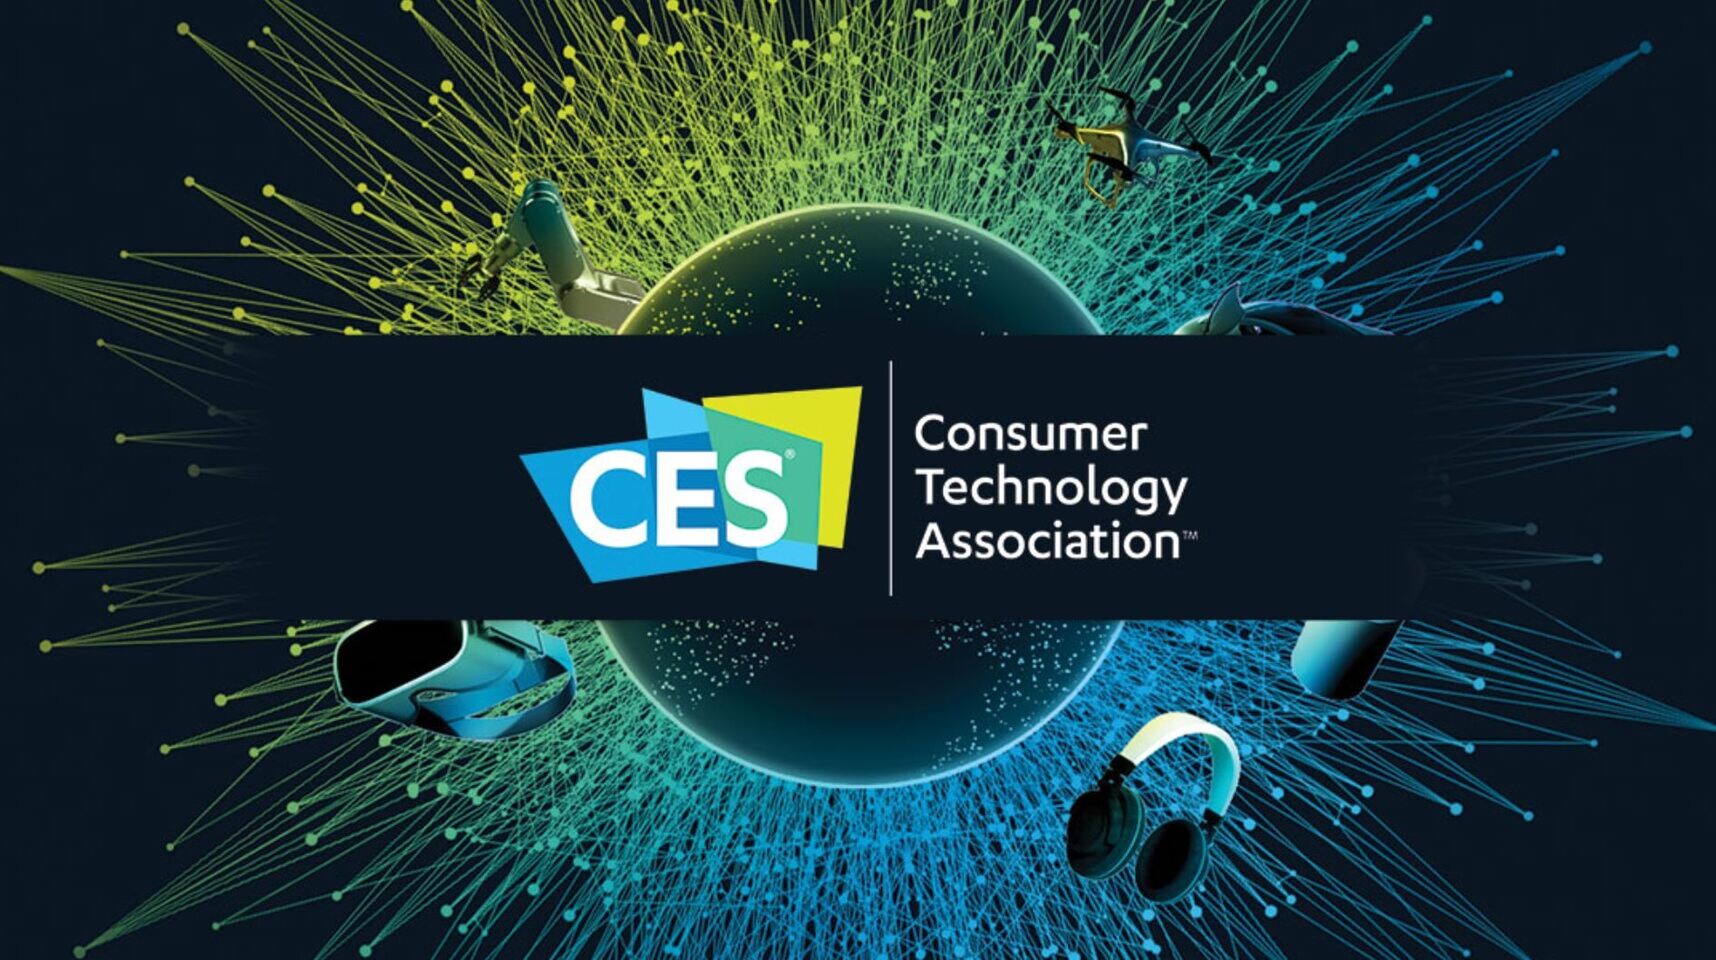 La Asociación de Tecnología del Consumidor (CTA) anunció hoy que CES cerrará un día antes y el evento en persona tendrá lugar en Las Vegas del 5 al 7 de enero de 2022. El espectáculo cerrará a las 6 PM el 7 de enero. El paso se dio como una medida de seguridad adicional a los protocolos de salud actuales que se han puesto en marcha para el CES.